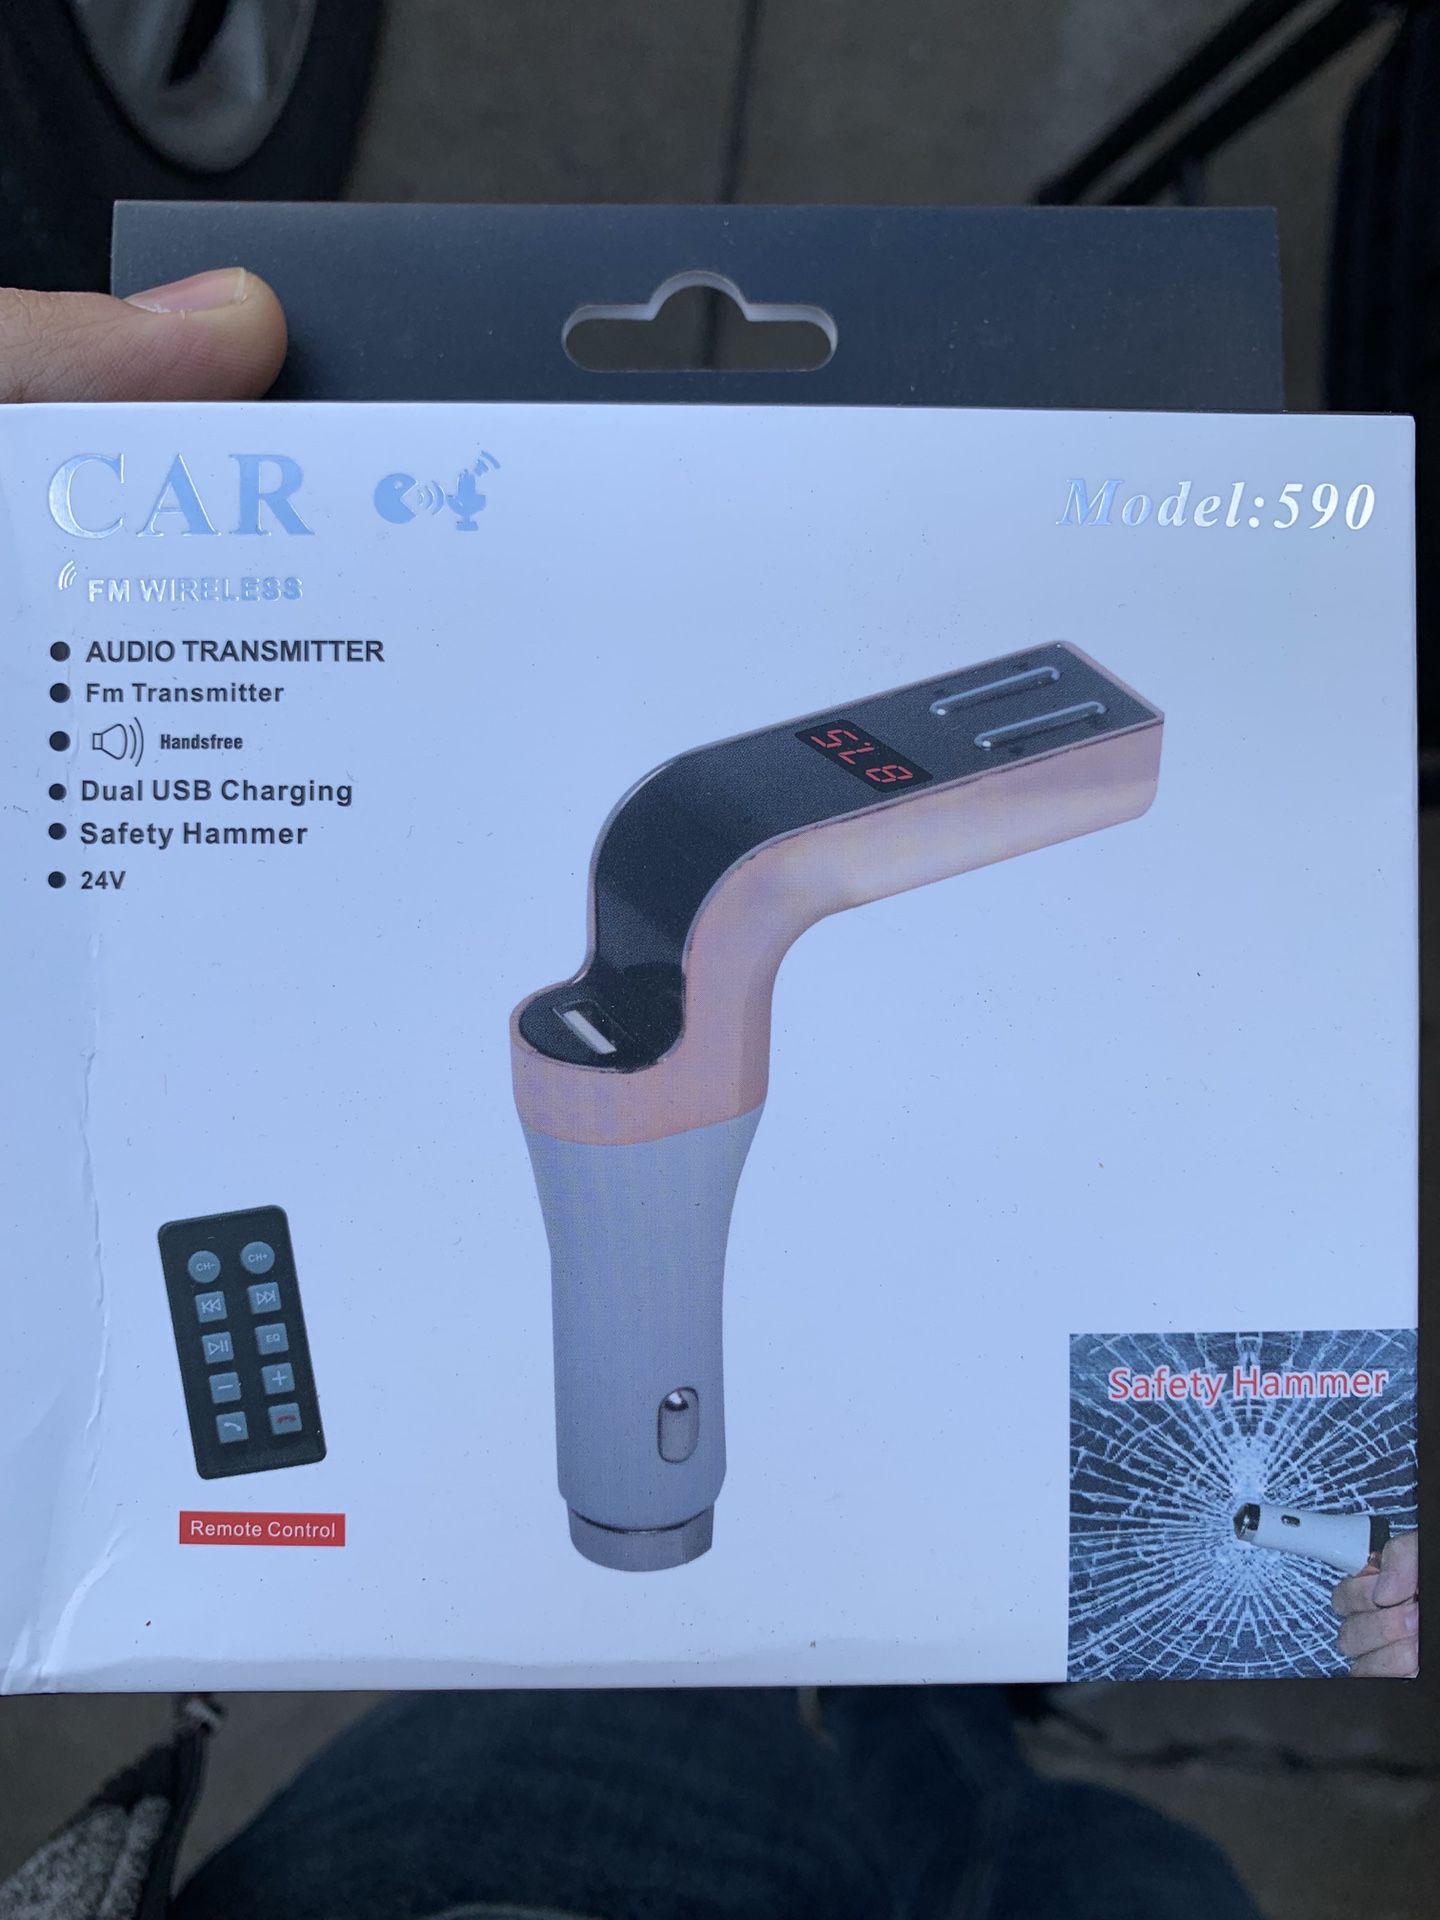 Audio transmitter for car